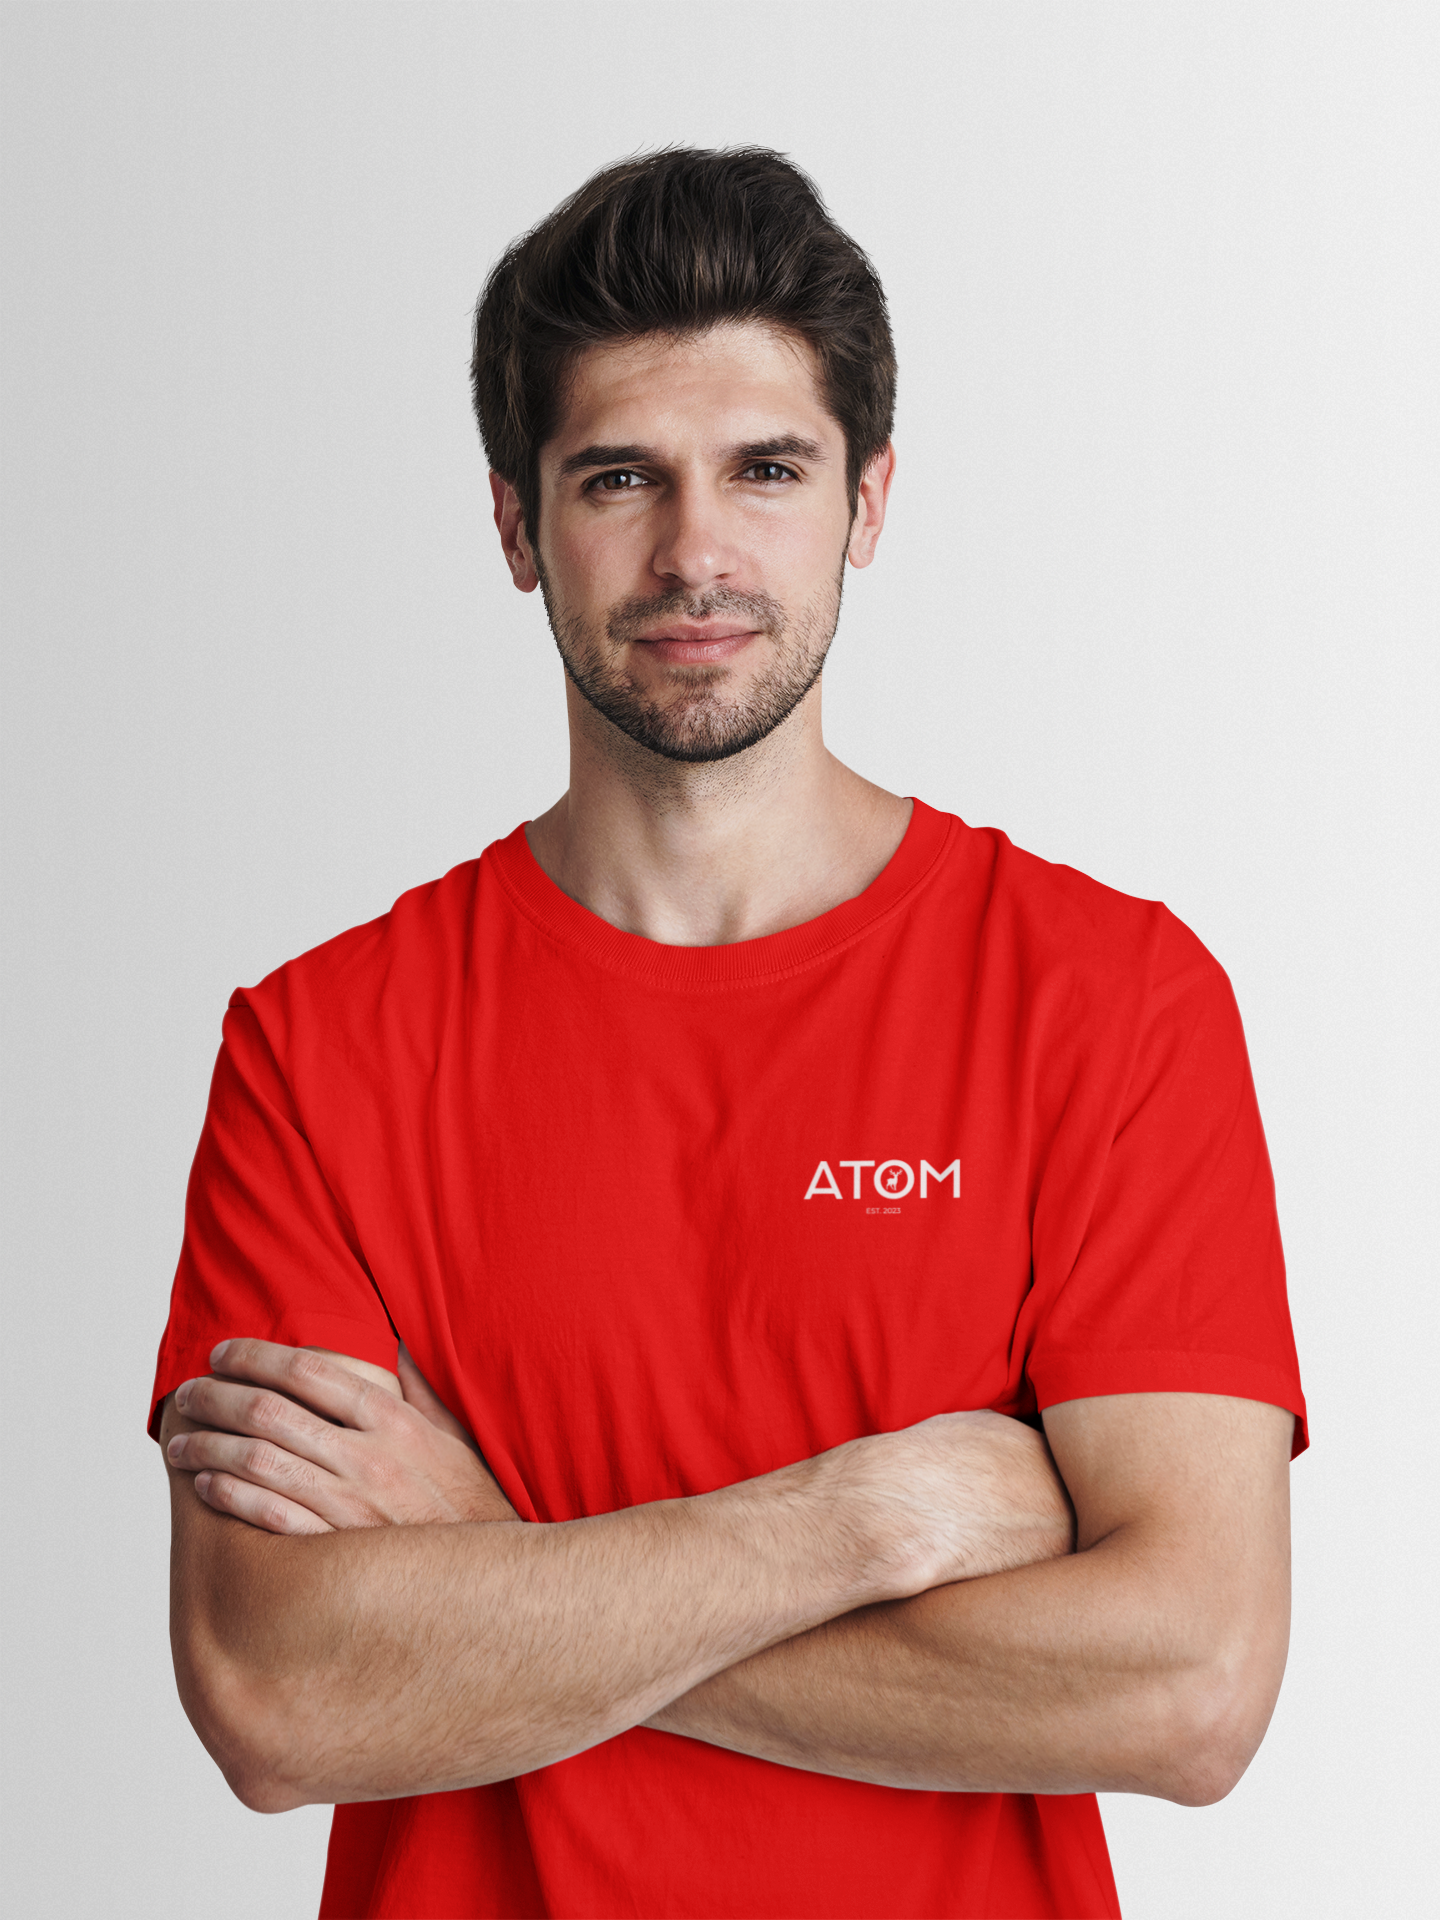 ATOM Logo Basic Red Round Neck T-Shirt for Men.